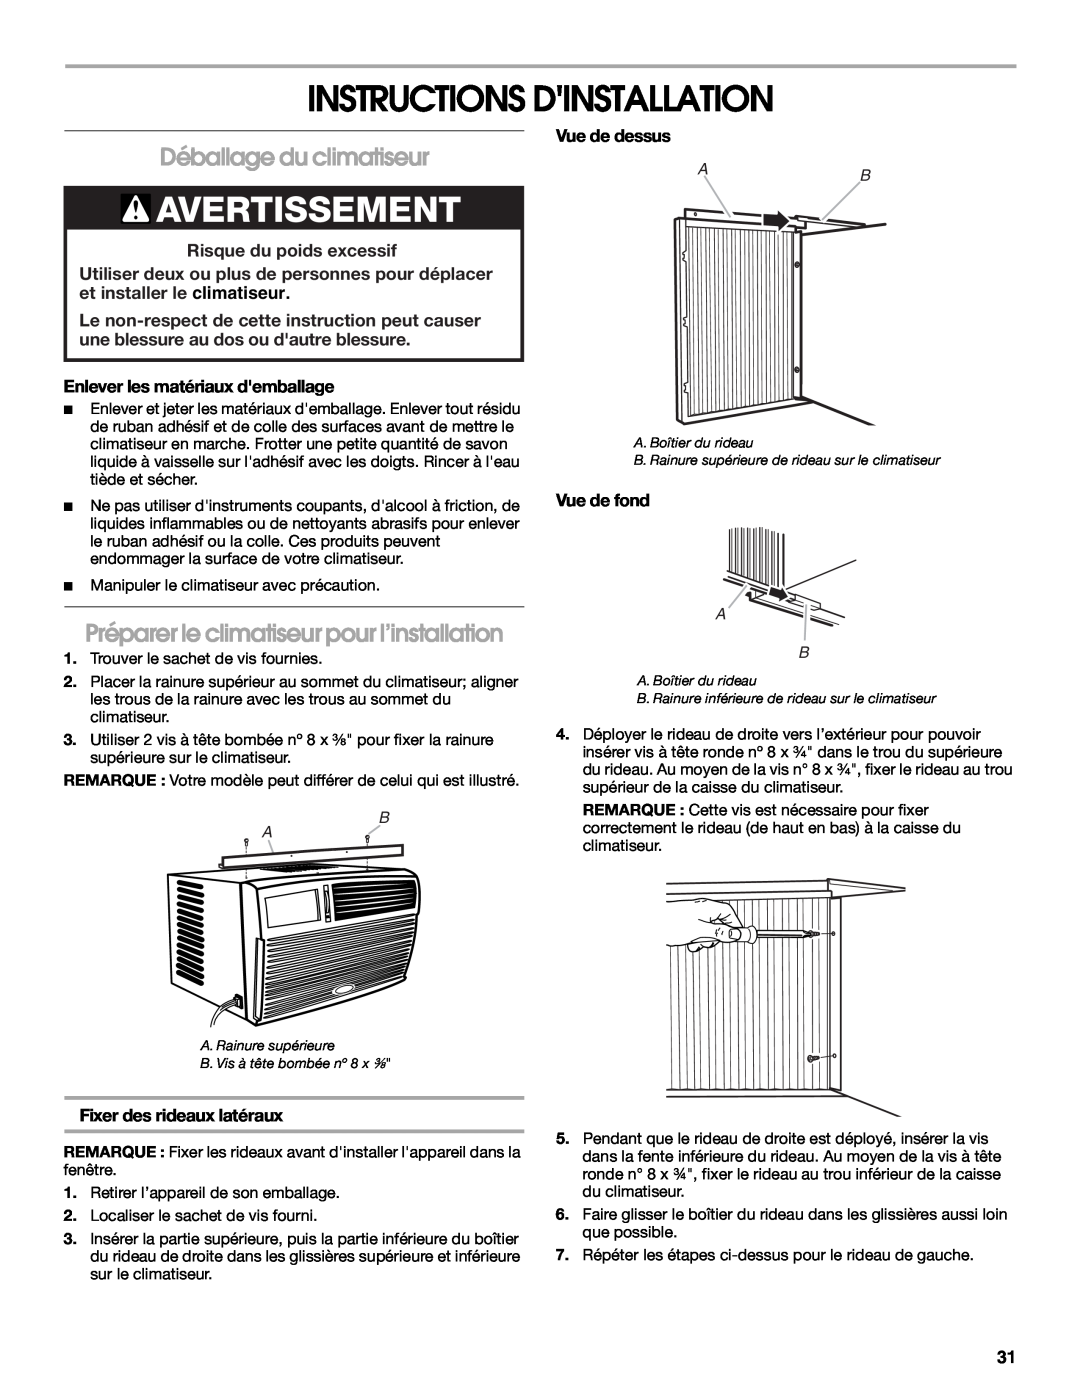 Whirlpool ACM052PS0 manual Instructions Dinstallation, Avertissement, Déballage du climatiseur, Risque du poids excessif 